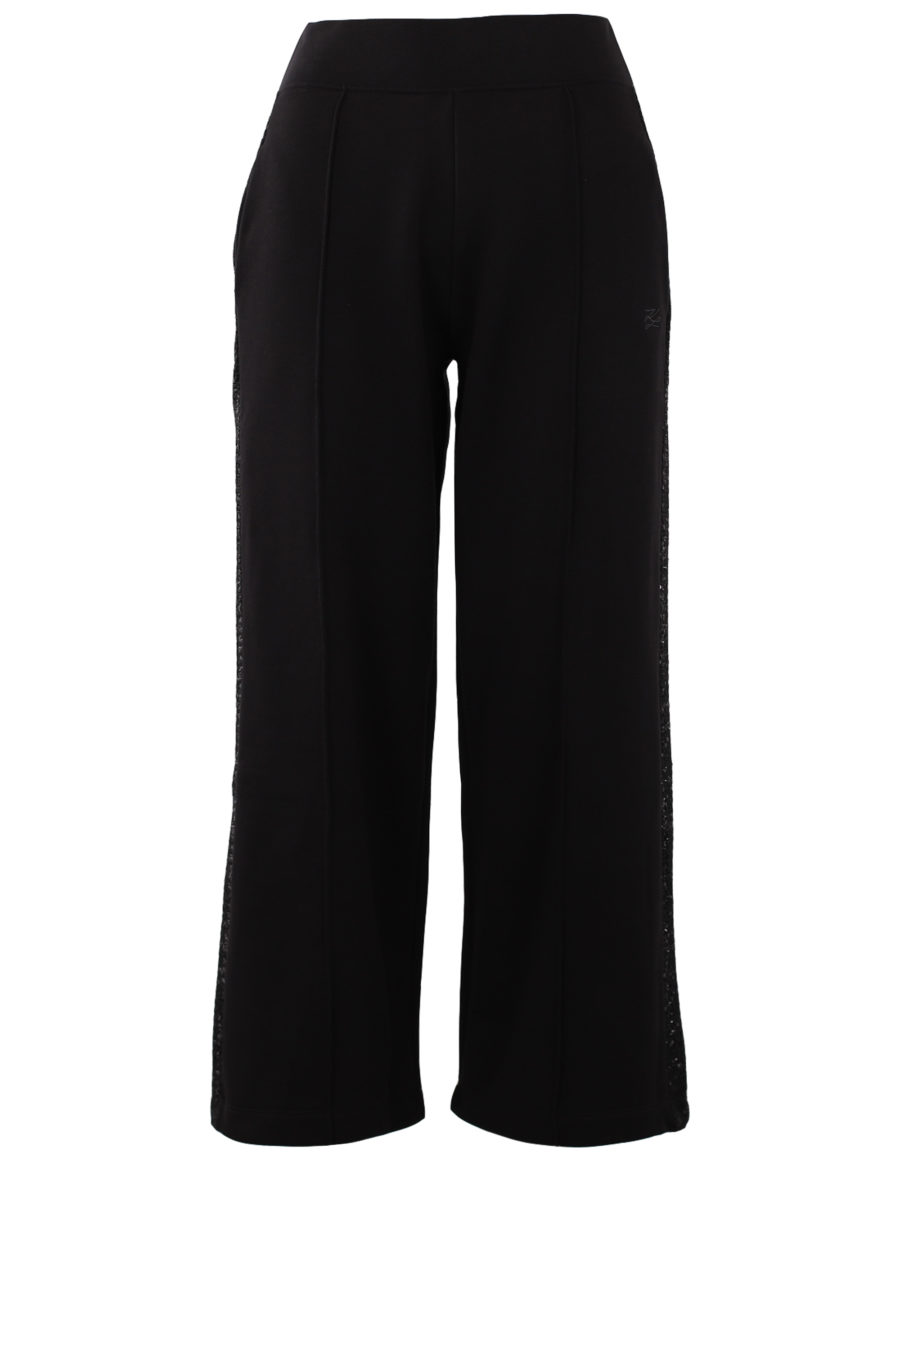 Pantalón negro con cinta de bouclé - IMG 0373